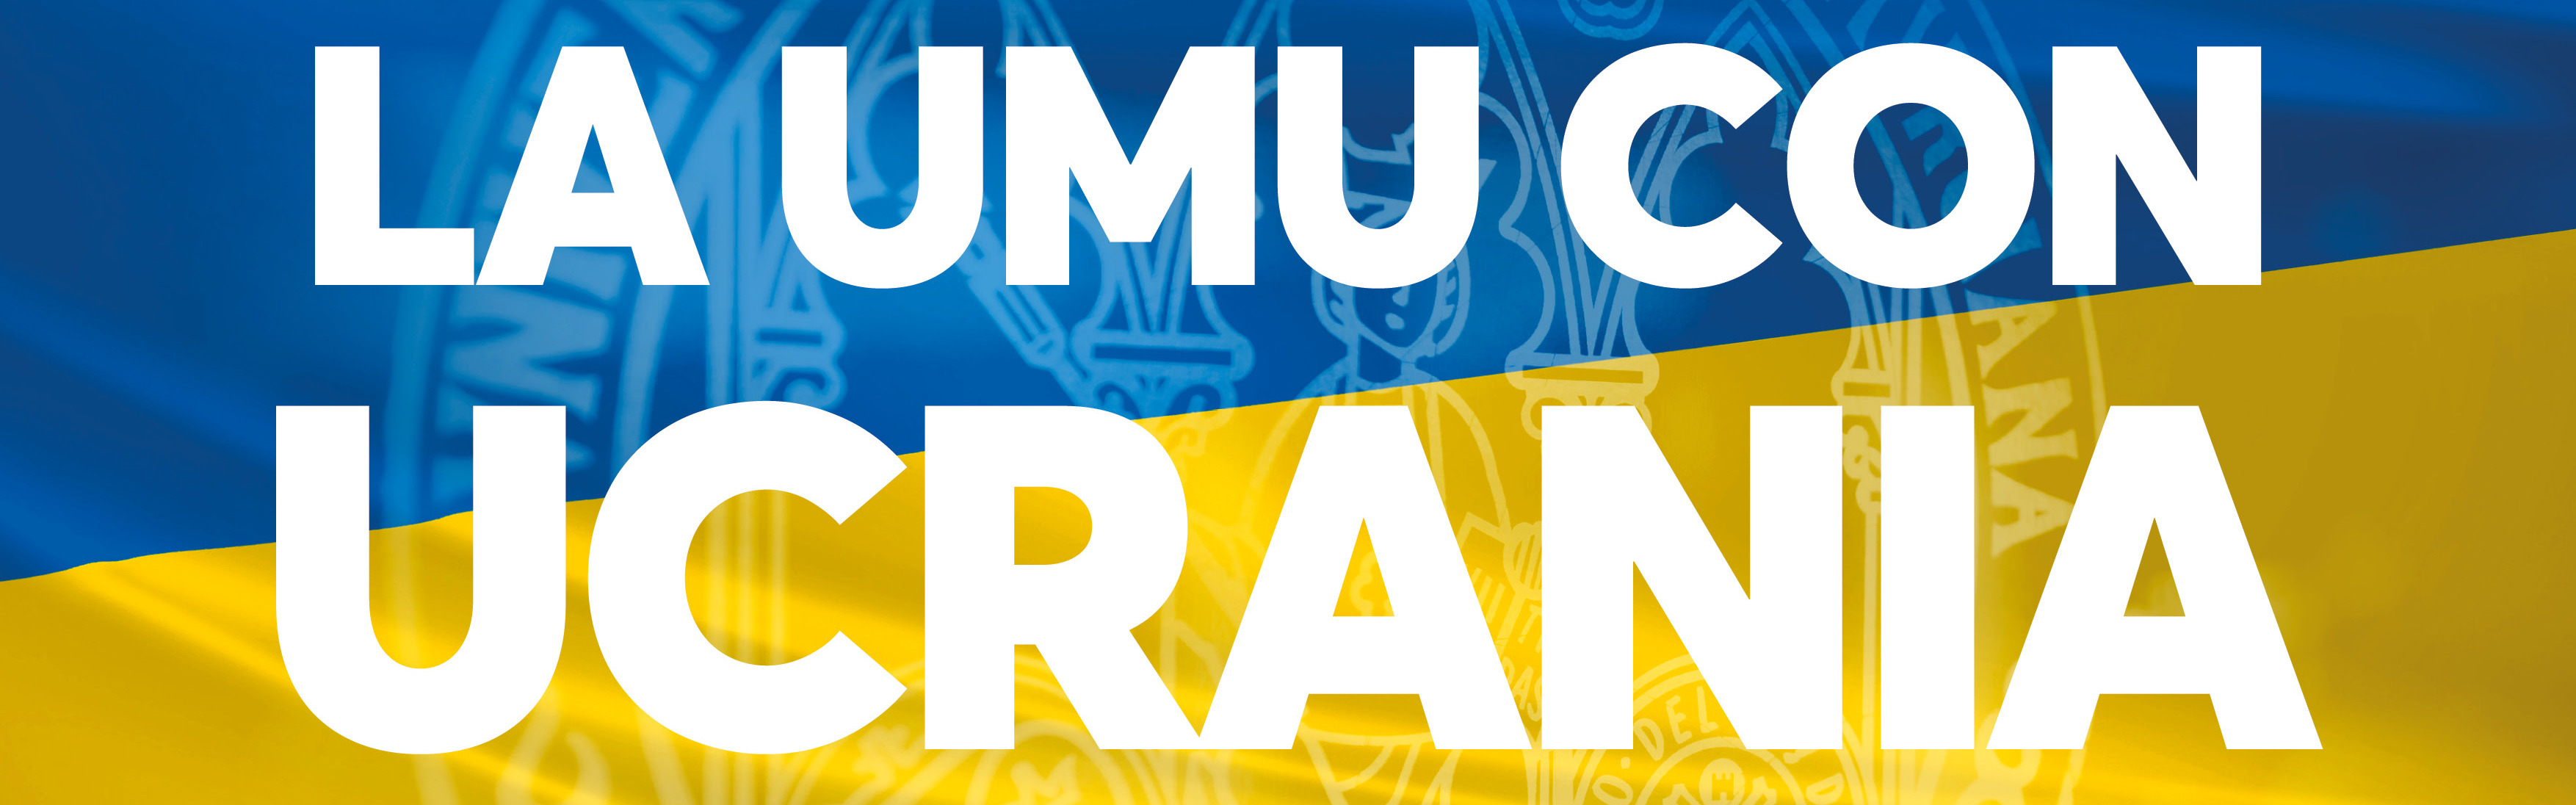 La Universidad de Murcia organiza una gran recogida de material sanitario y alimentos para Ucrania